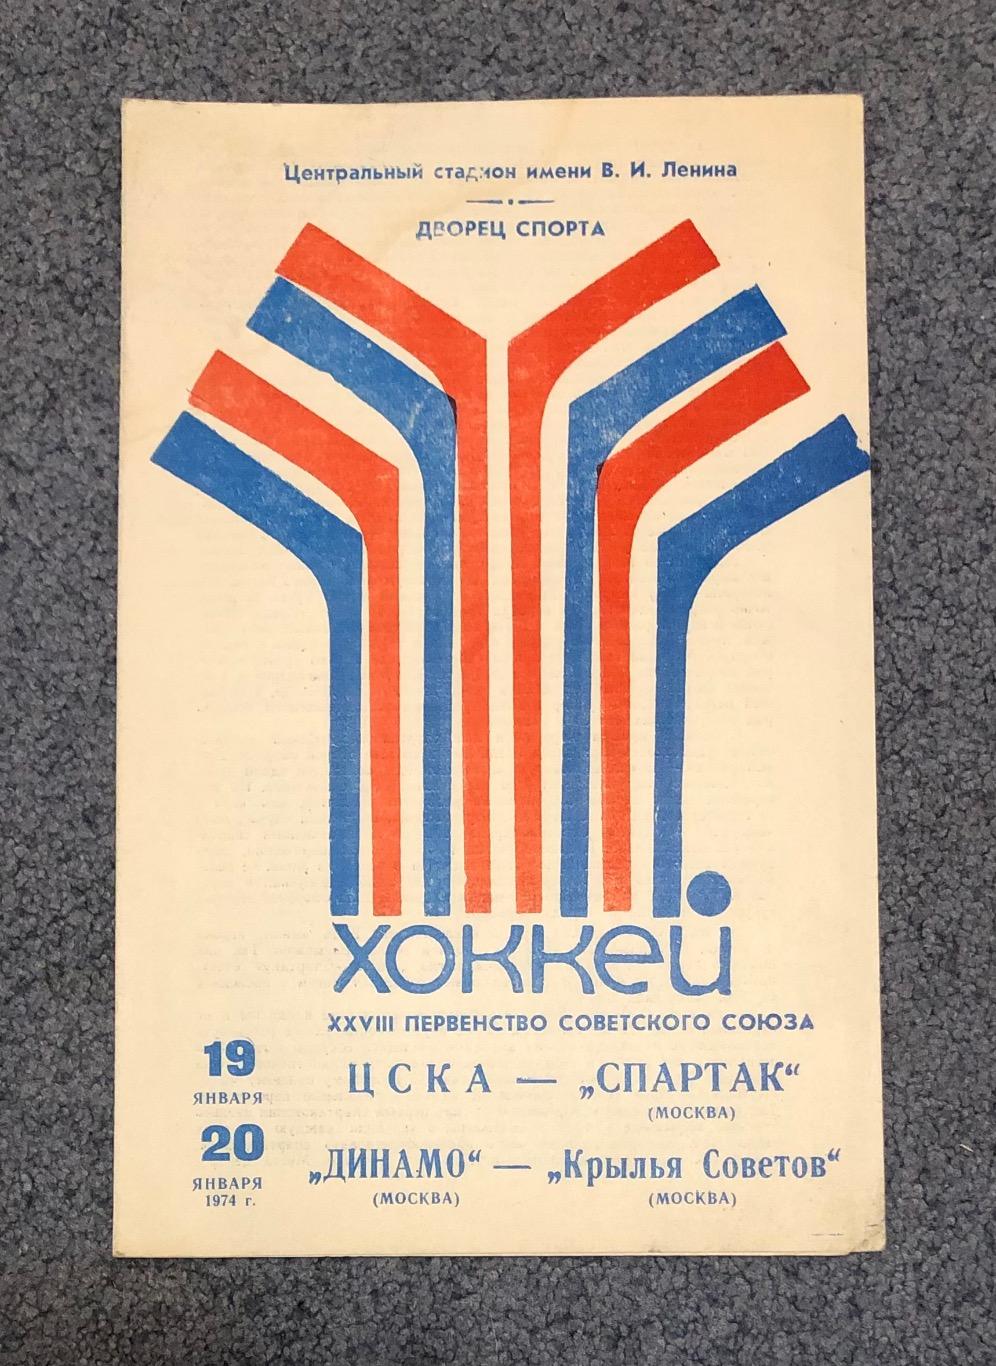 ЦСКА - Спартак Москва, Динамо Москва - Крылья Советов Москва, 19 и 20.01.1974